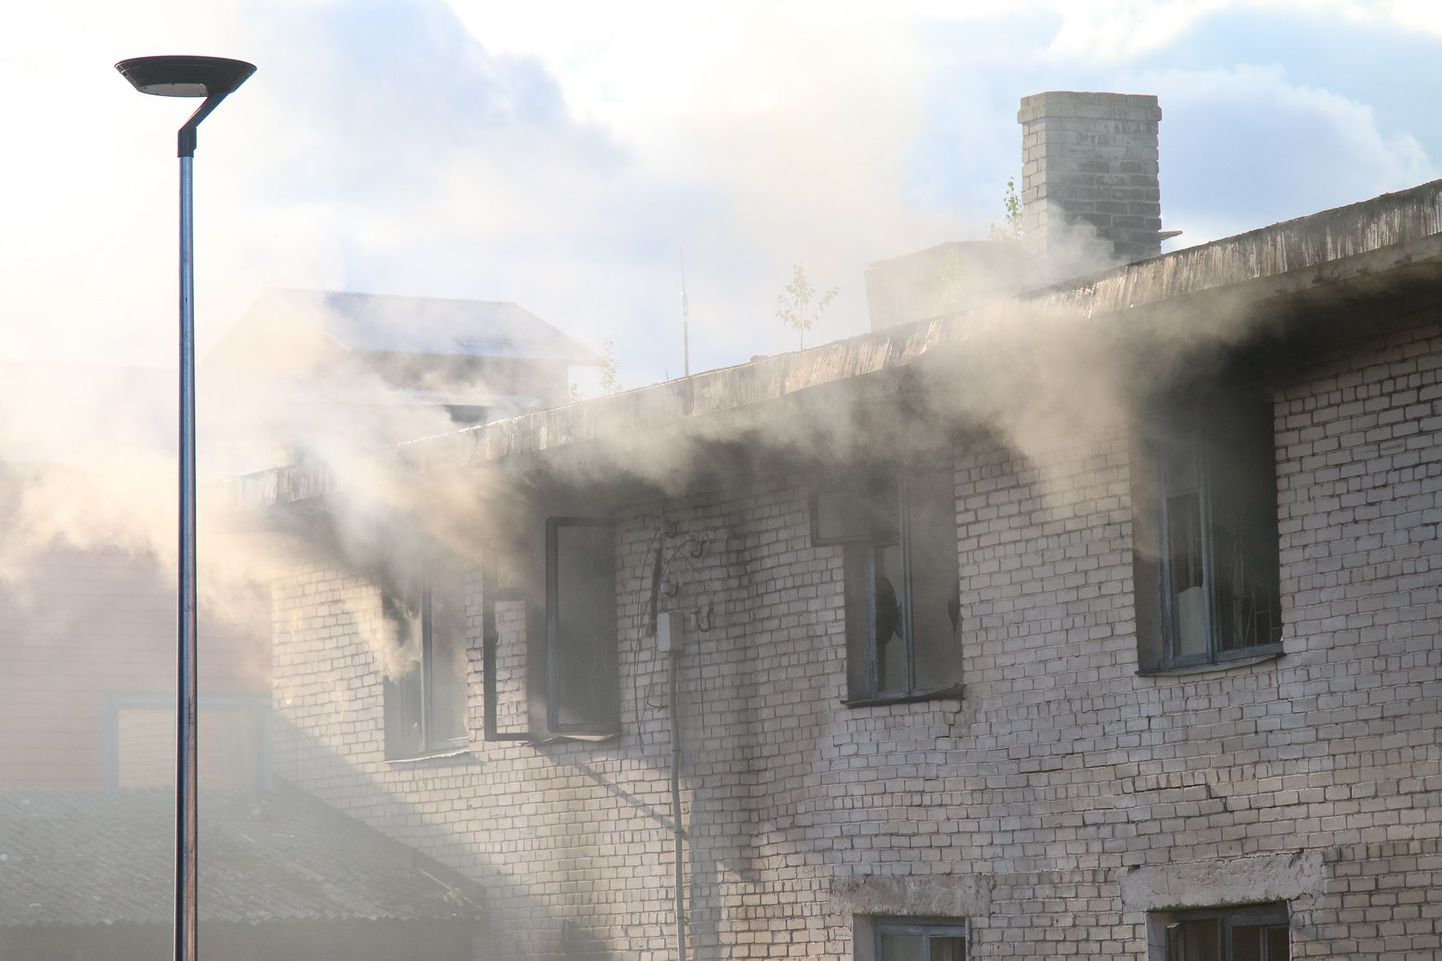 Järjekordne põleng Valga ajaloolises linnaosas Riia tänavas. Hoones oli põlengu puhkedes ka kaks inimest, kes vajasid arstiabi.